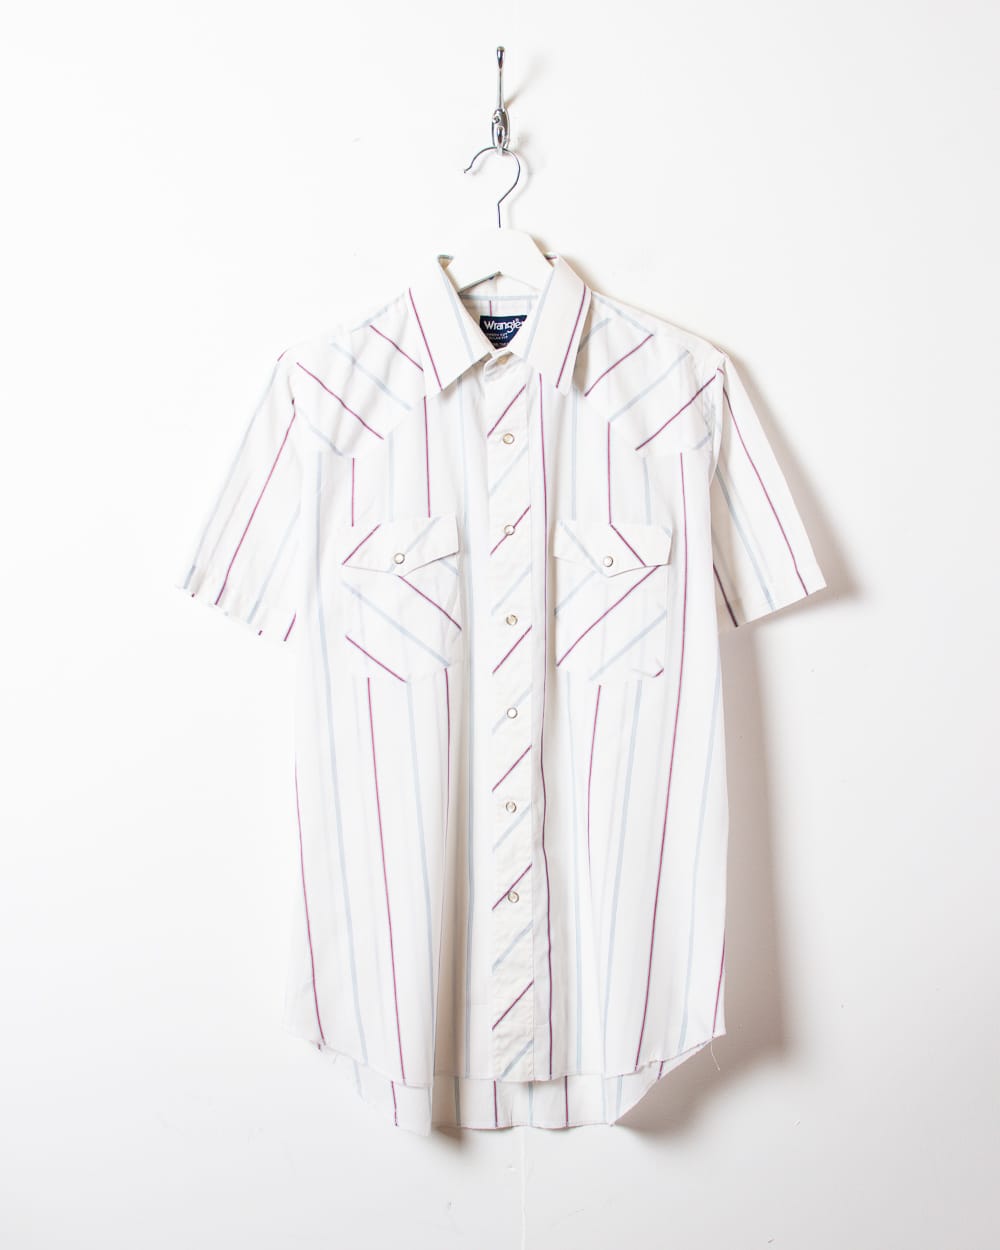 White Wrangler Striped Short Sleeved Shirt - Medium